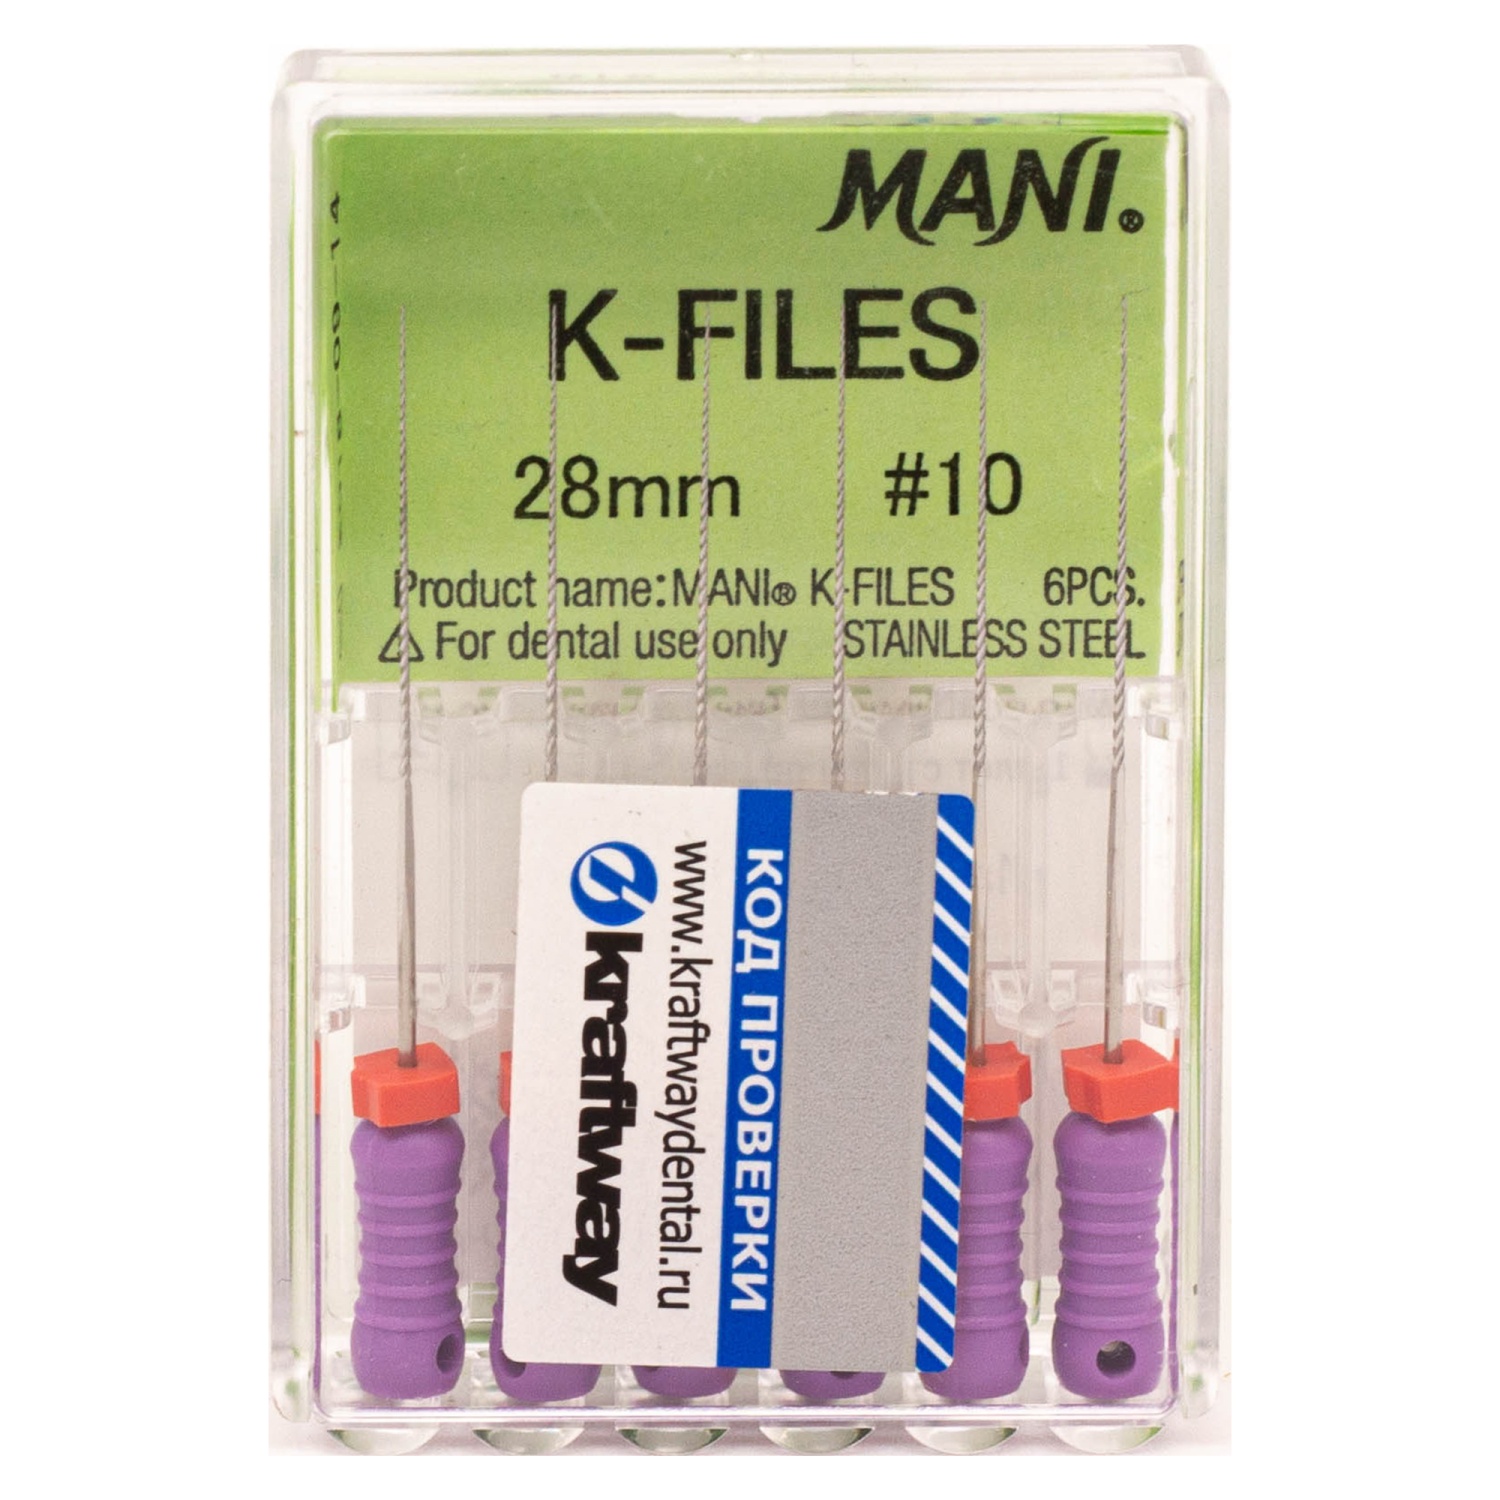 К-файлы 28 мм № 10 - эндодонтические файлы (6 шт), "Mani"